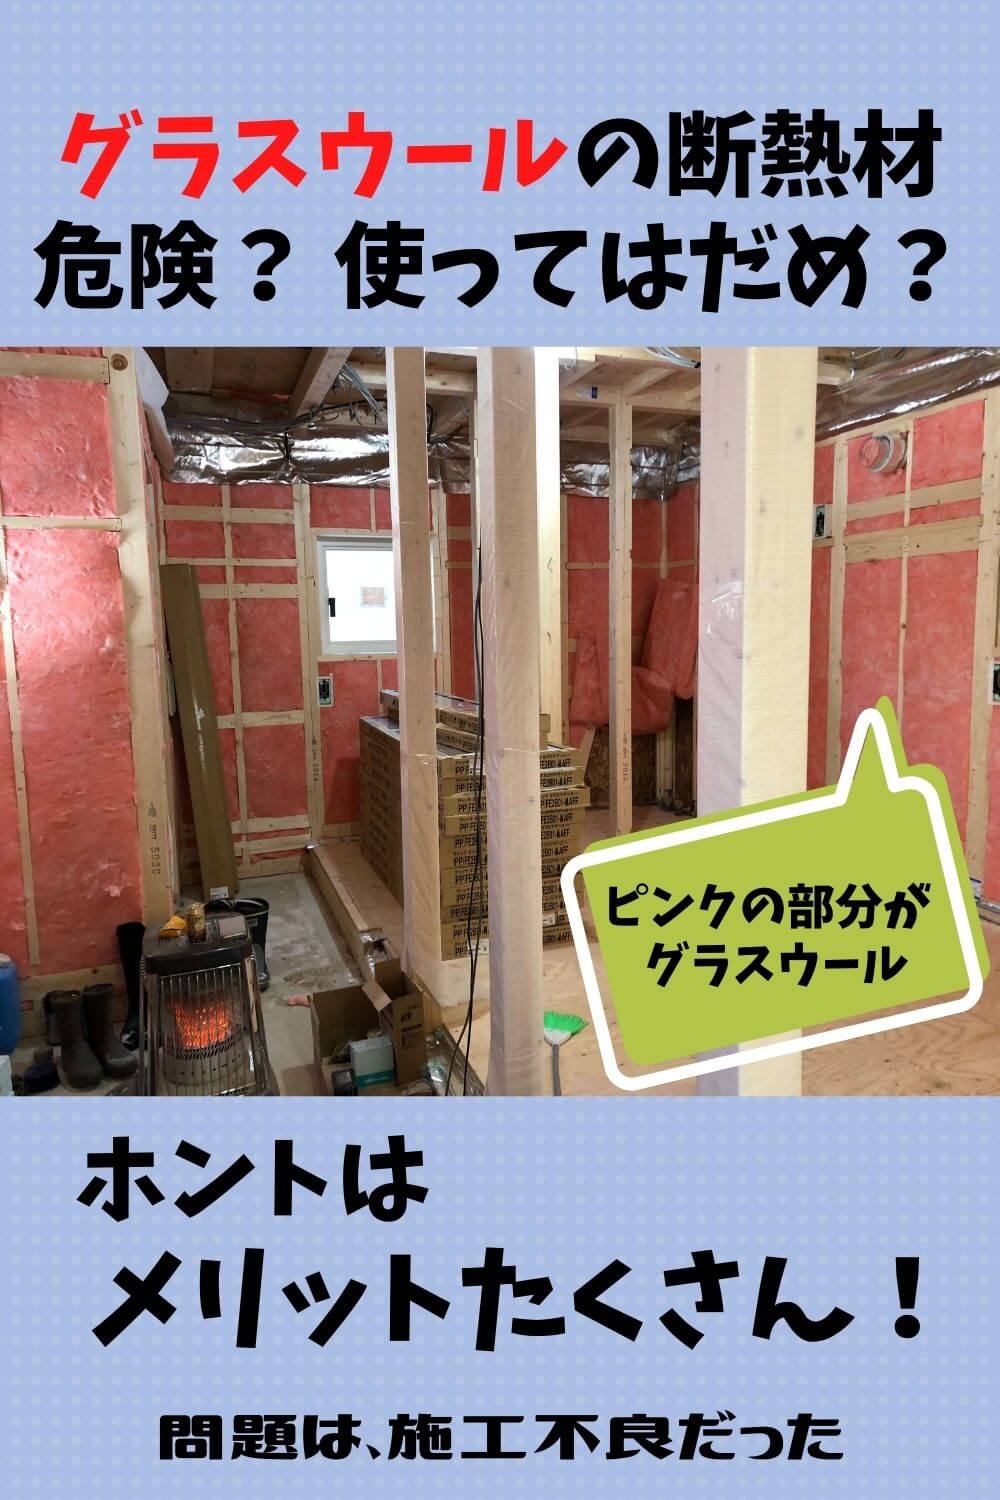 札幌のローコスト住宅 断熱材にグラスウールを使うのは危険なの 札幌のローコスト住宅 おすすめ業者の比較と口コミナビ